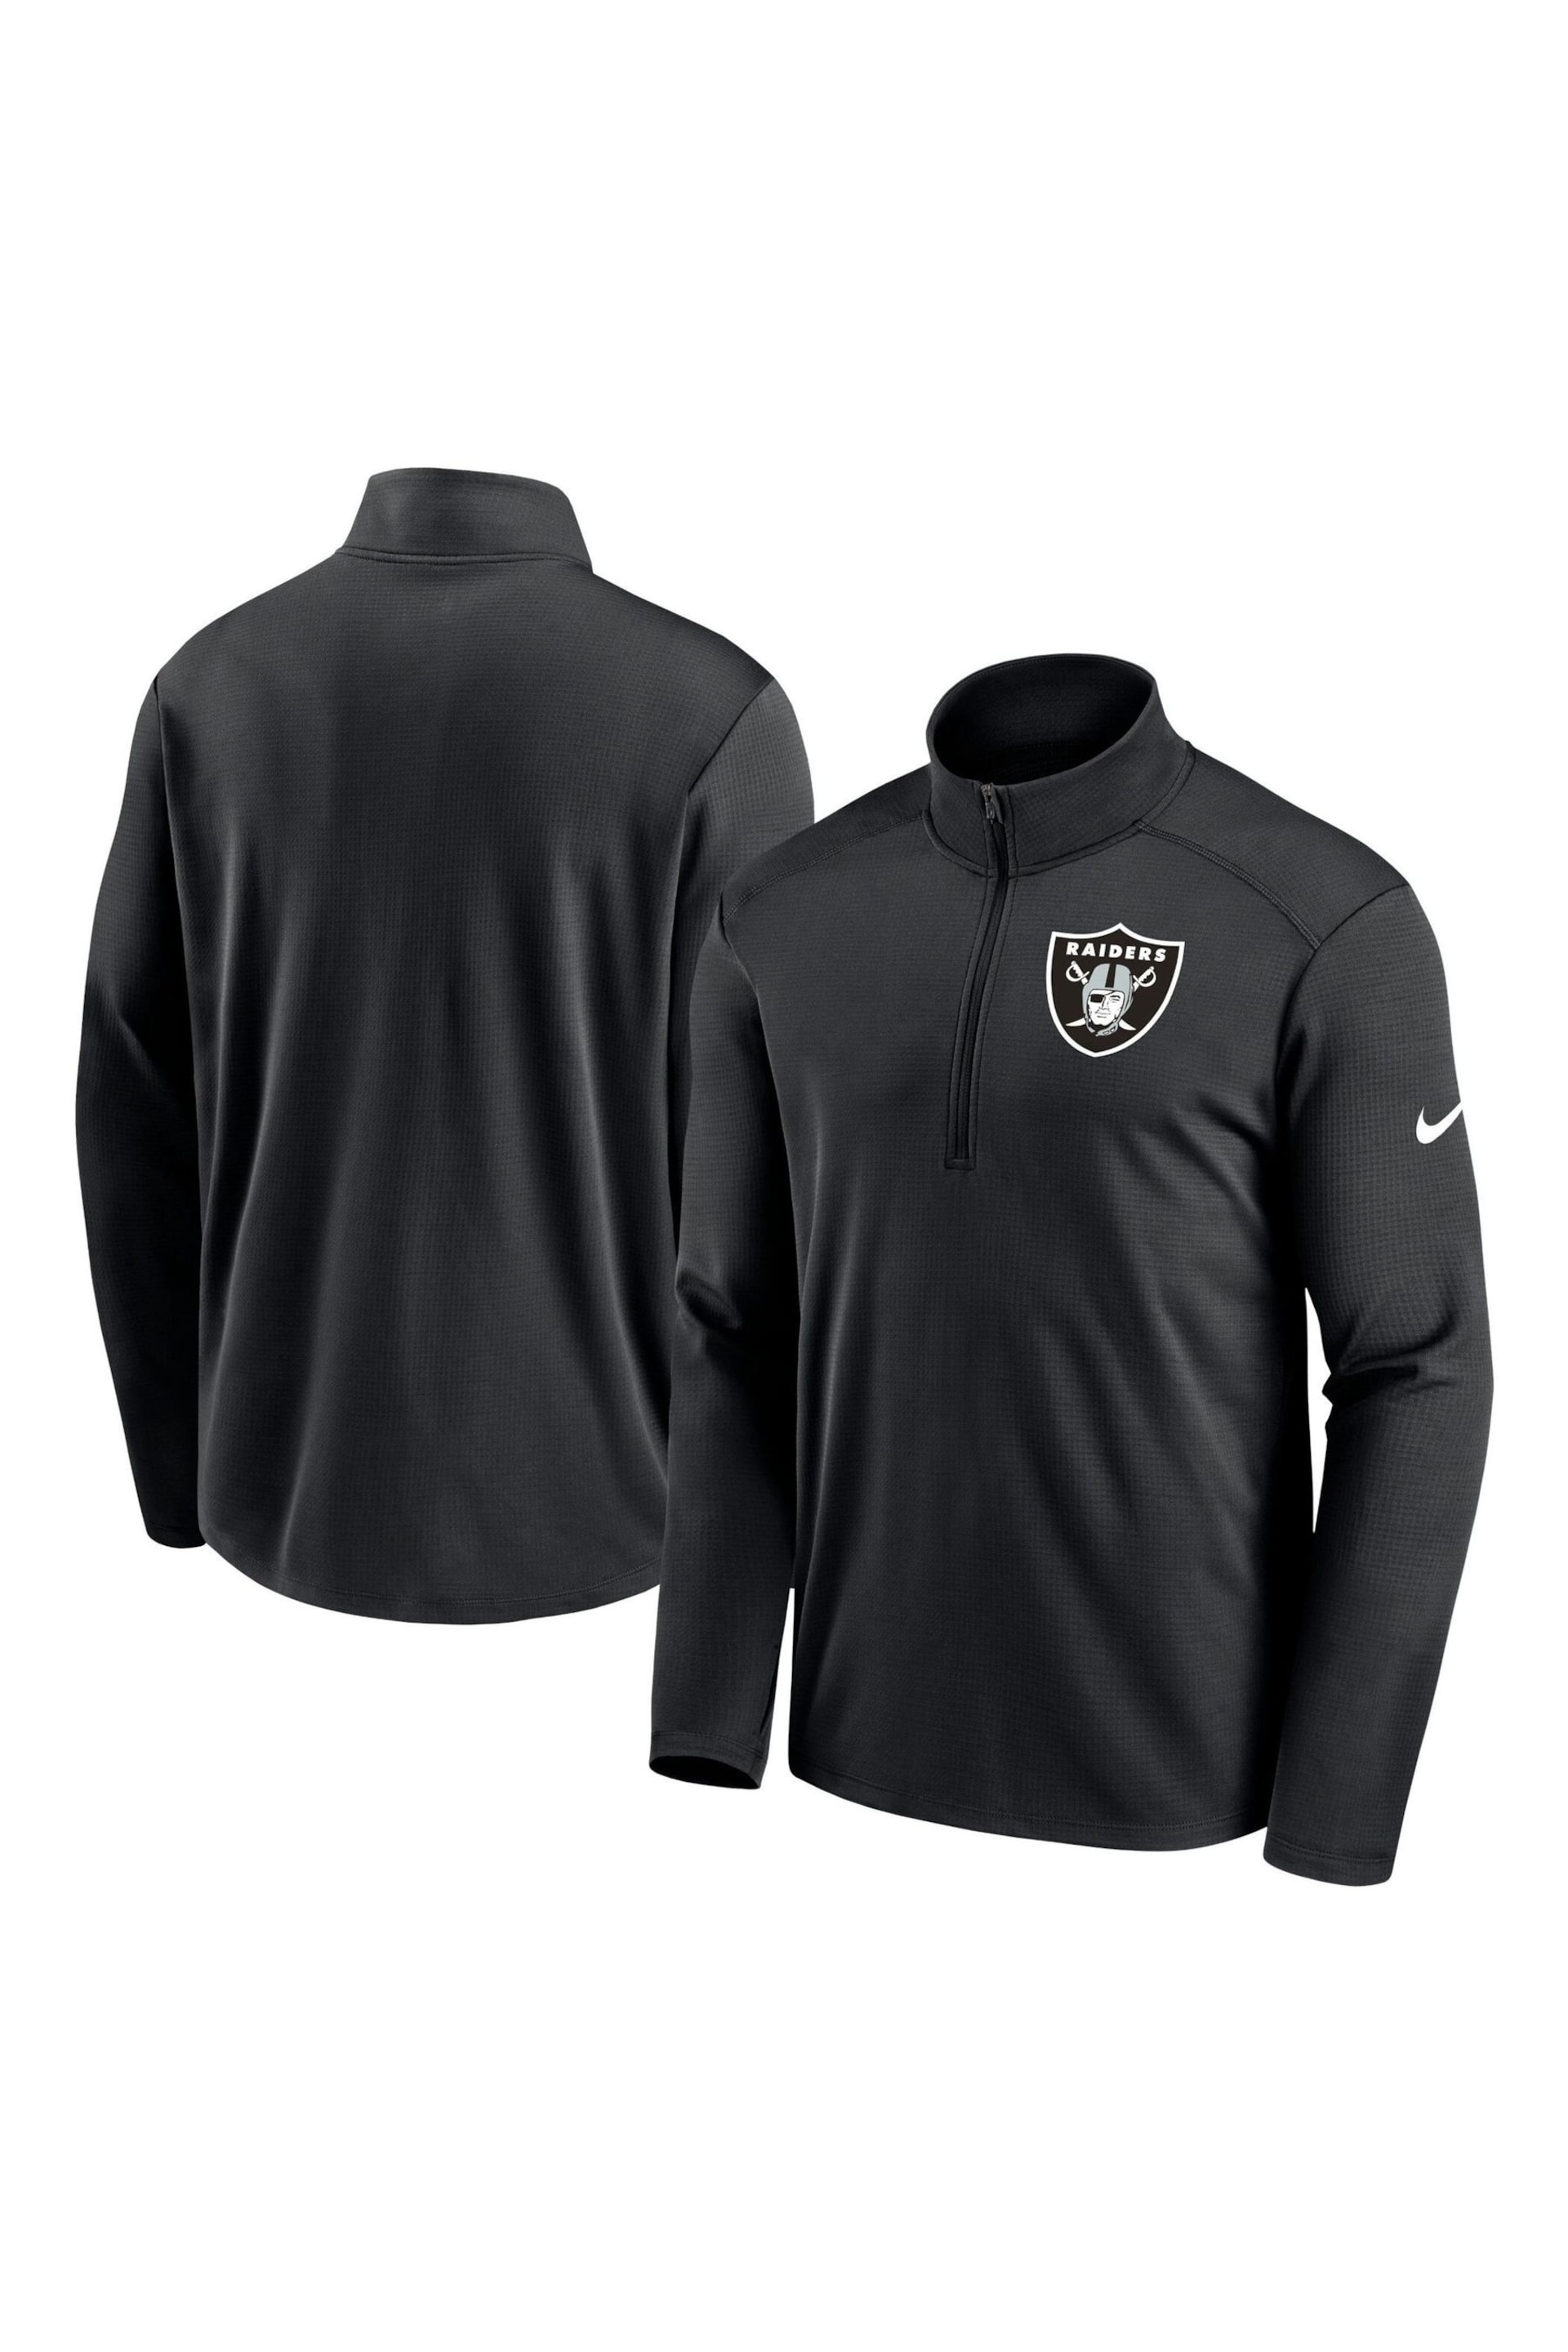 Nike Black NFL Fanatics Las Vegas Raiders Logo Pacer Half Zip Hoodie - Image 3 of 3